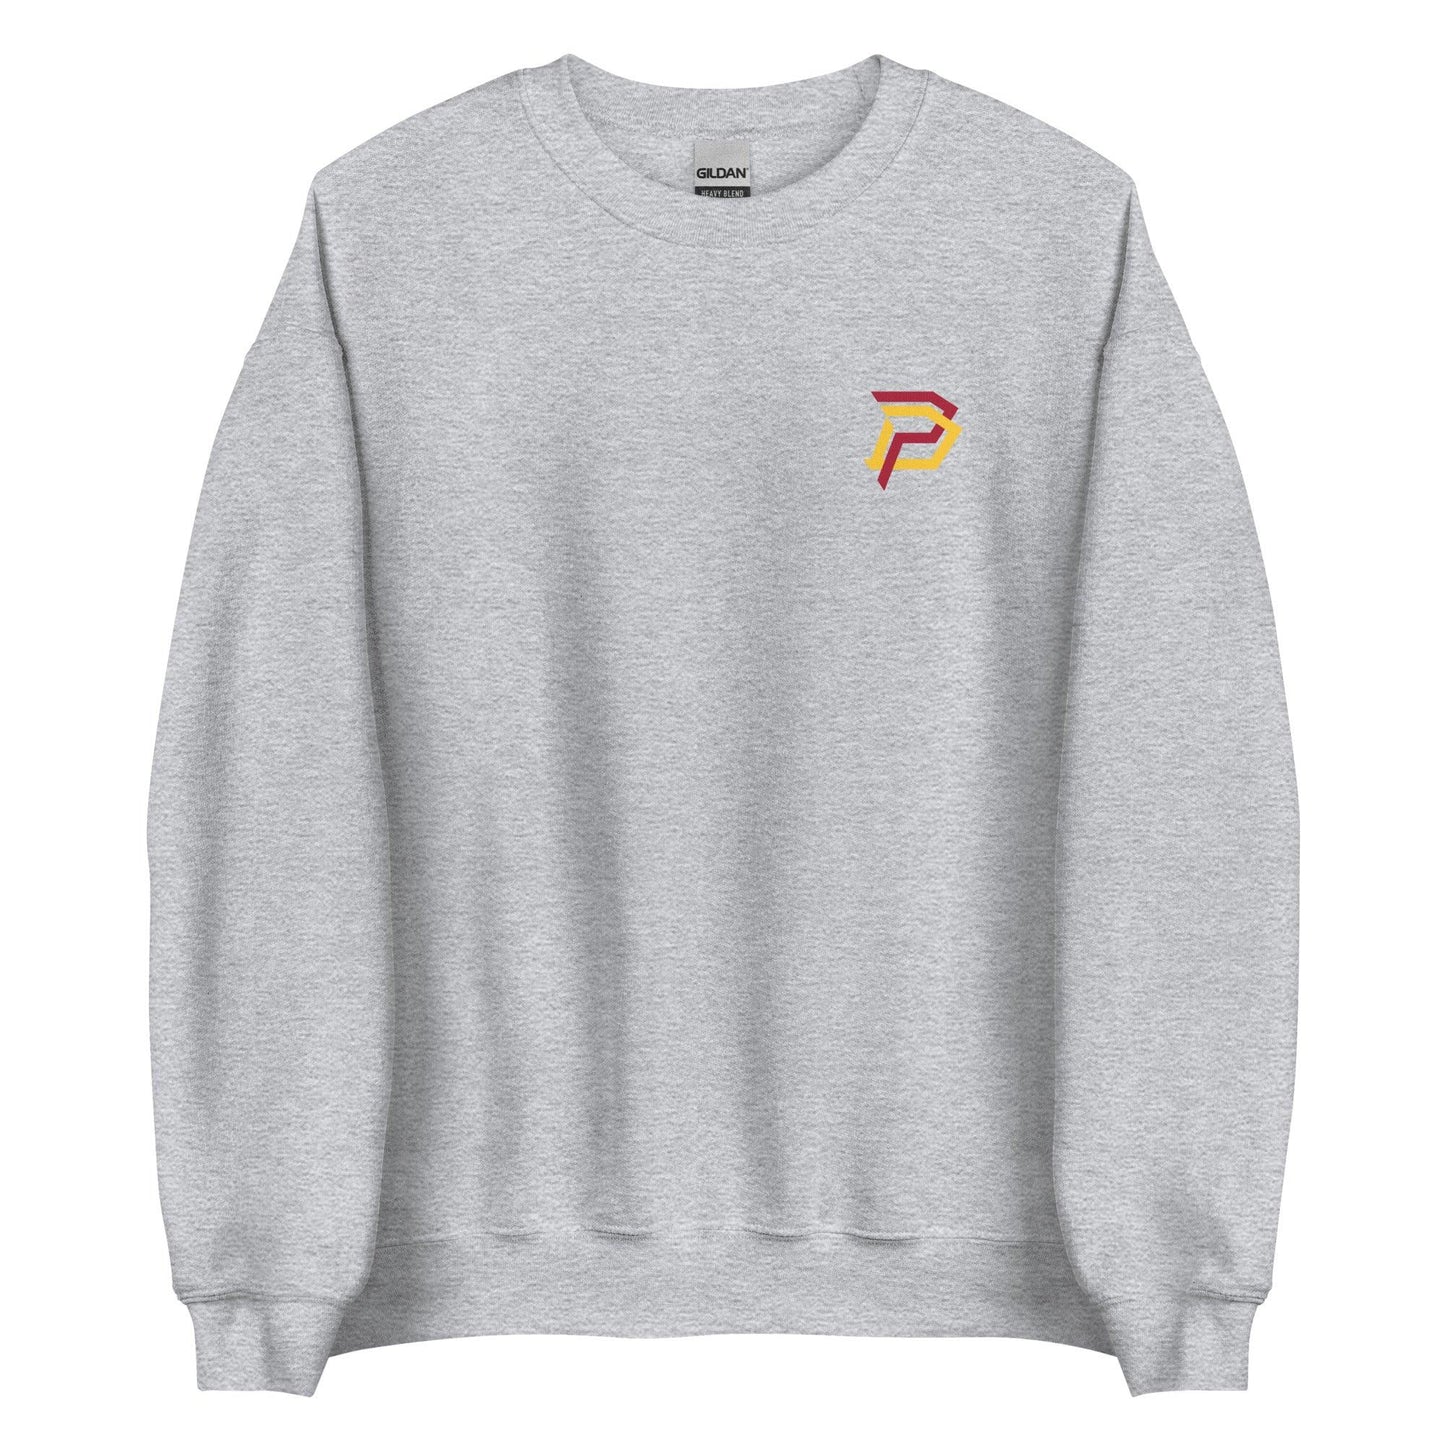 Dwayne Pierce "Essential" Sweatshirt - Fan Arch